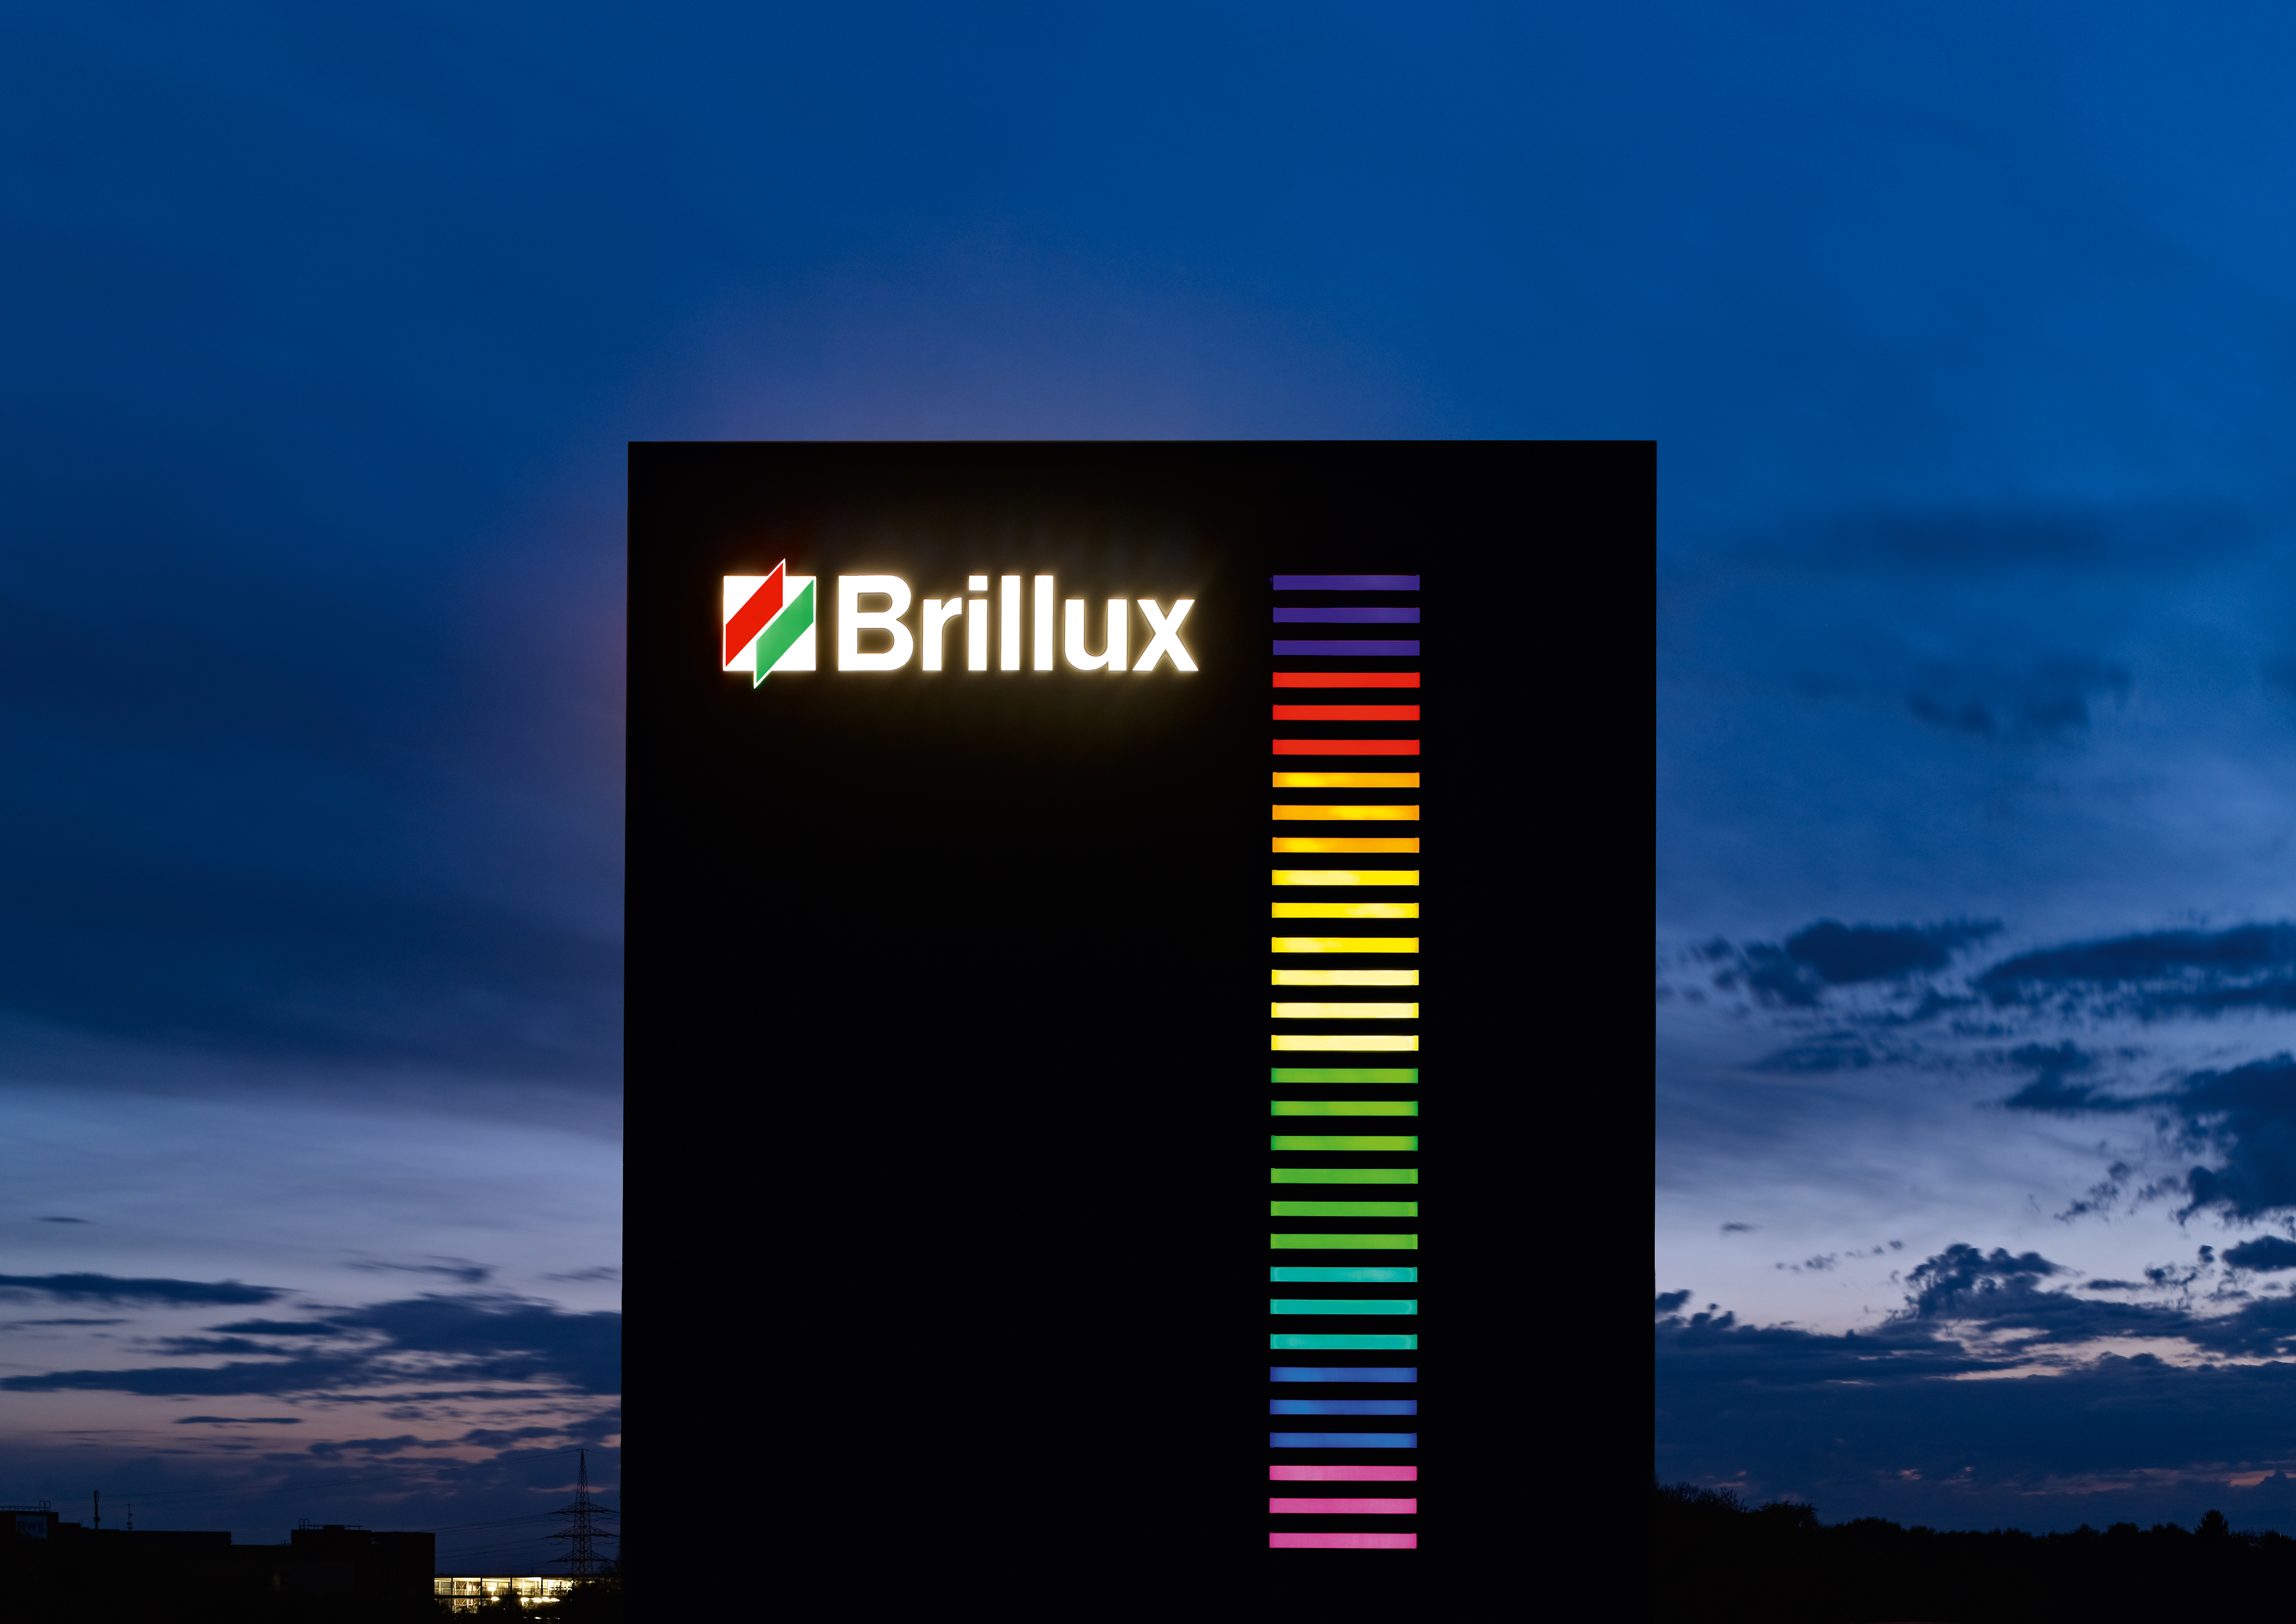 Brillux zählt zu den besten Arbeitgebern 2015